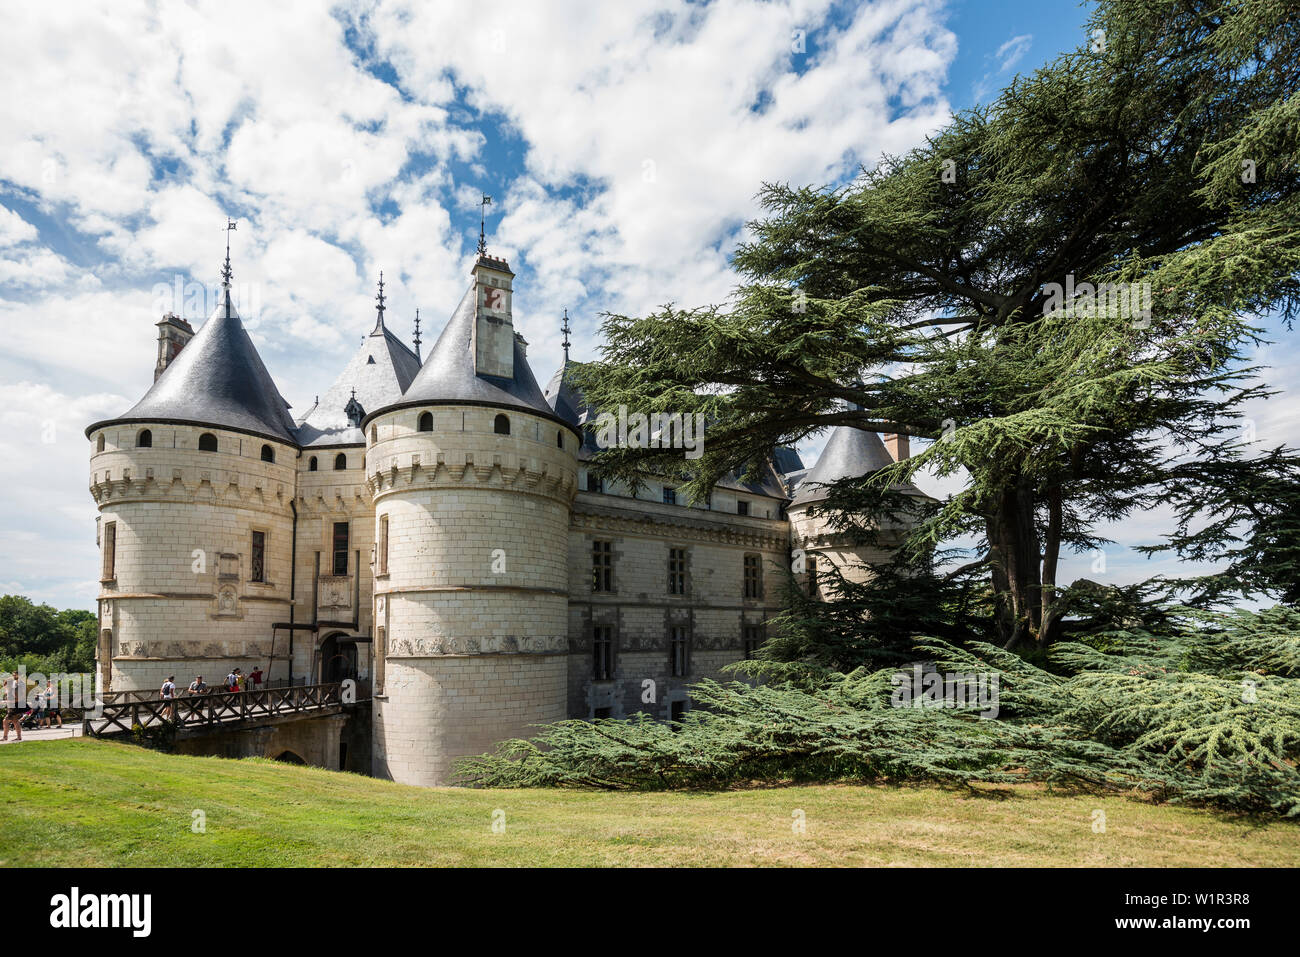 Chaumont Castle with park, Château de Chaumont, Chaumont-sur-Loire, Loire, Département Loir-et-Cher, France Stock Photo